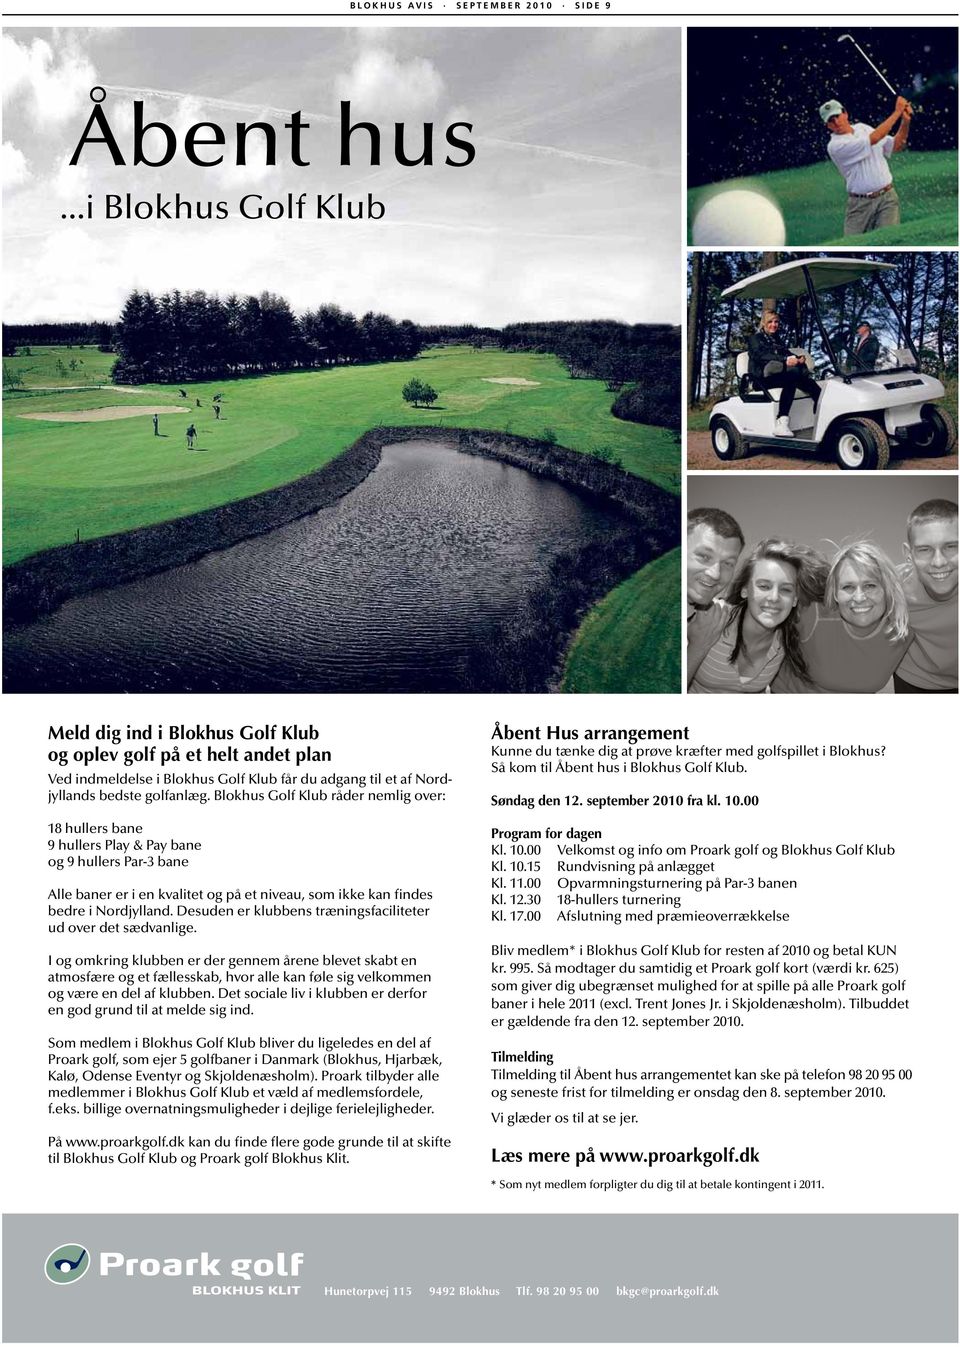 Blokhus Golf Klub råder nemlig over: 18 hullers bane 9 hullers Play & Pay bane og 9 hullers Par-3 bane Alle baner er i en kvalitet og på et niveau, som ikke kan findes bedre i Nordjylland.